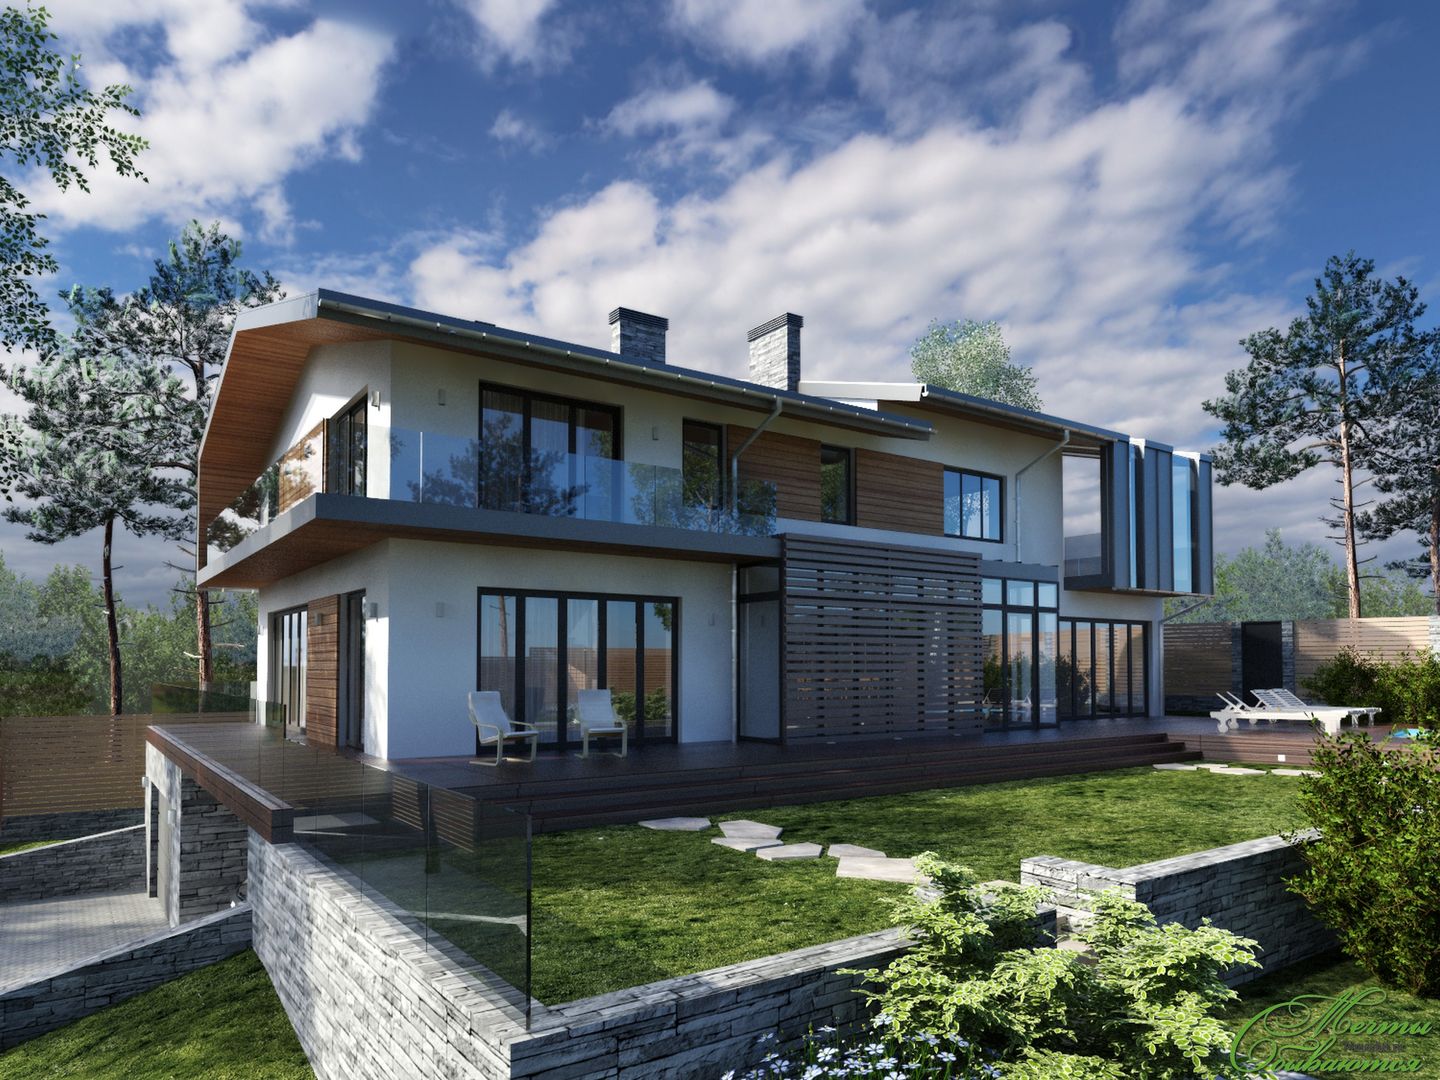 Дом на берегу озера Увильды, Компания архитекторов Латышевых "Мечты сбываются" Компания архитекторов Латышевых 'Мечты сбываются' Casas minimalistas